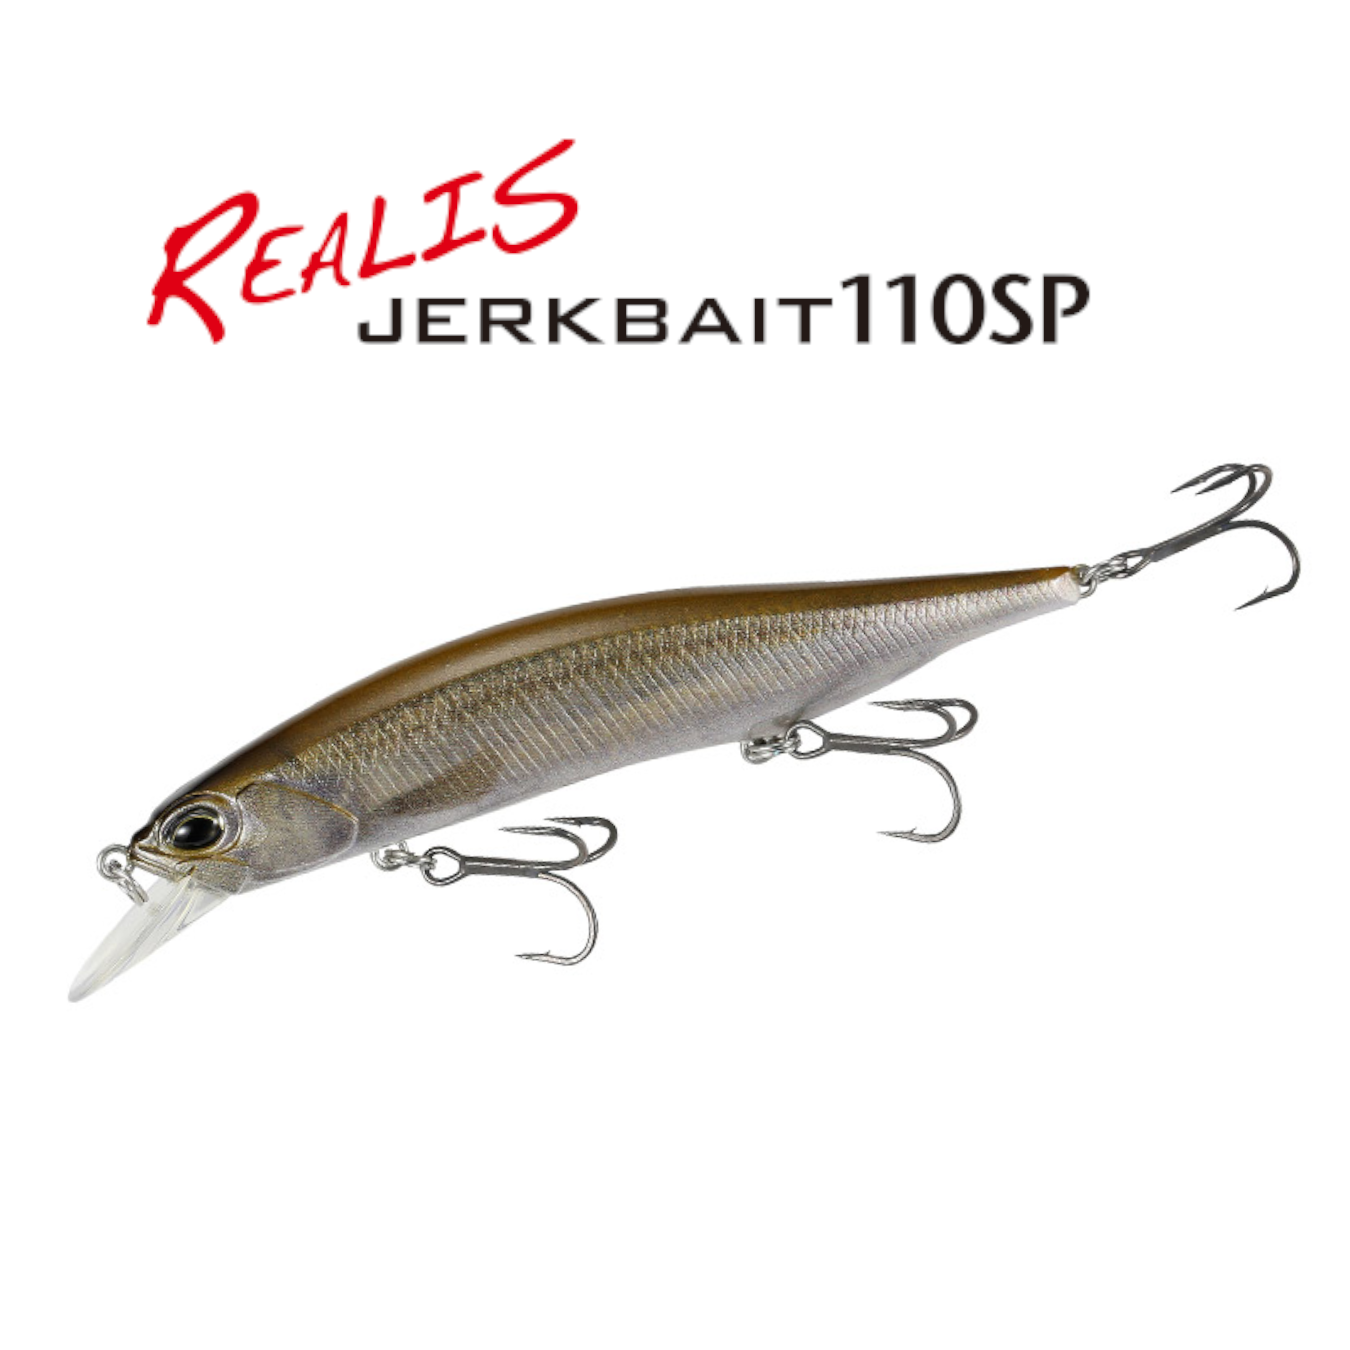  Lurefans A8S Jerkbait, Spending Jerkbaits For Bass Fishing  Lures, Fixed Depth Jerk Bait For Freshwater, 1/4 Oz 3.15, Long Casting Jerk  Baits